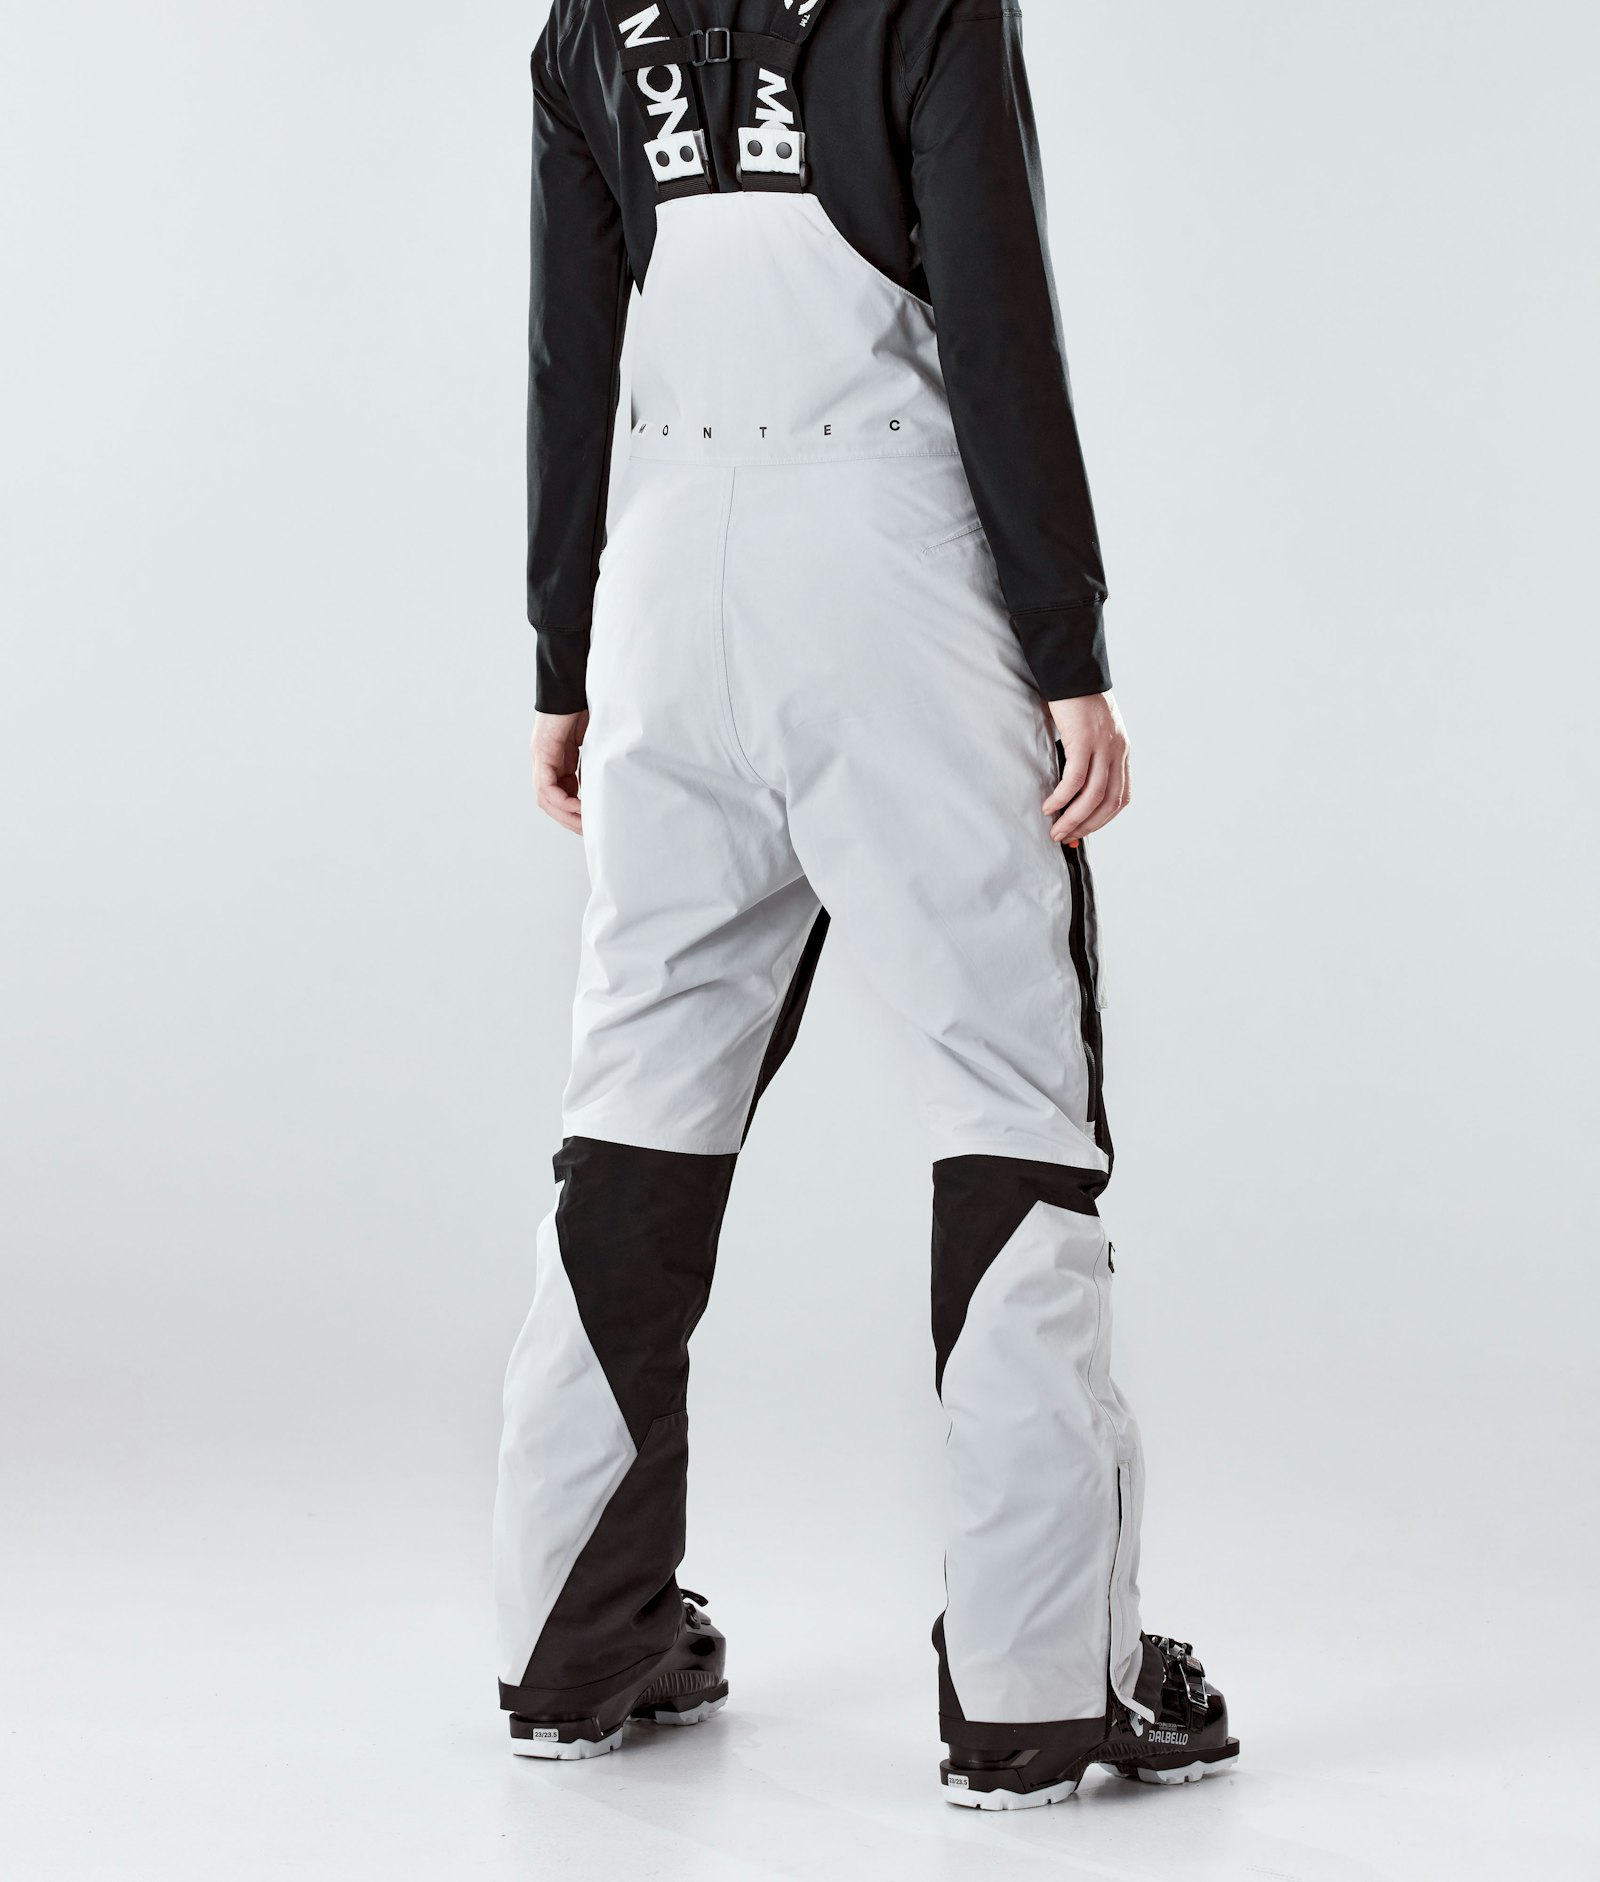 Montec Fawk W 2020 Spodnie Narciarskie Kobiety Light Grey/Black